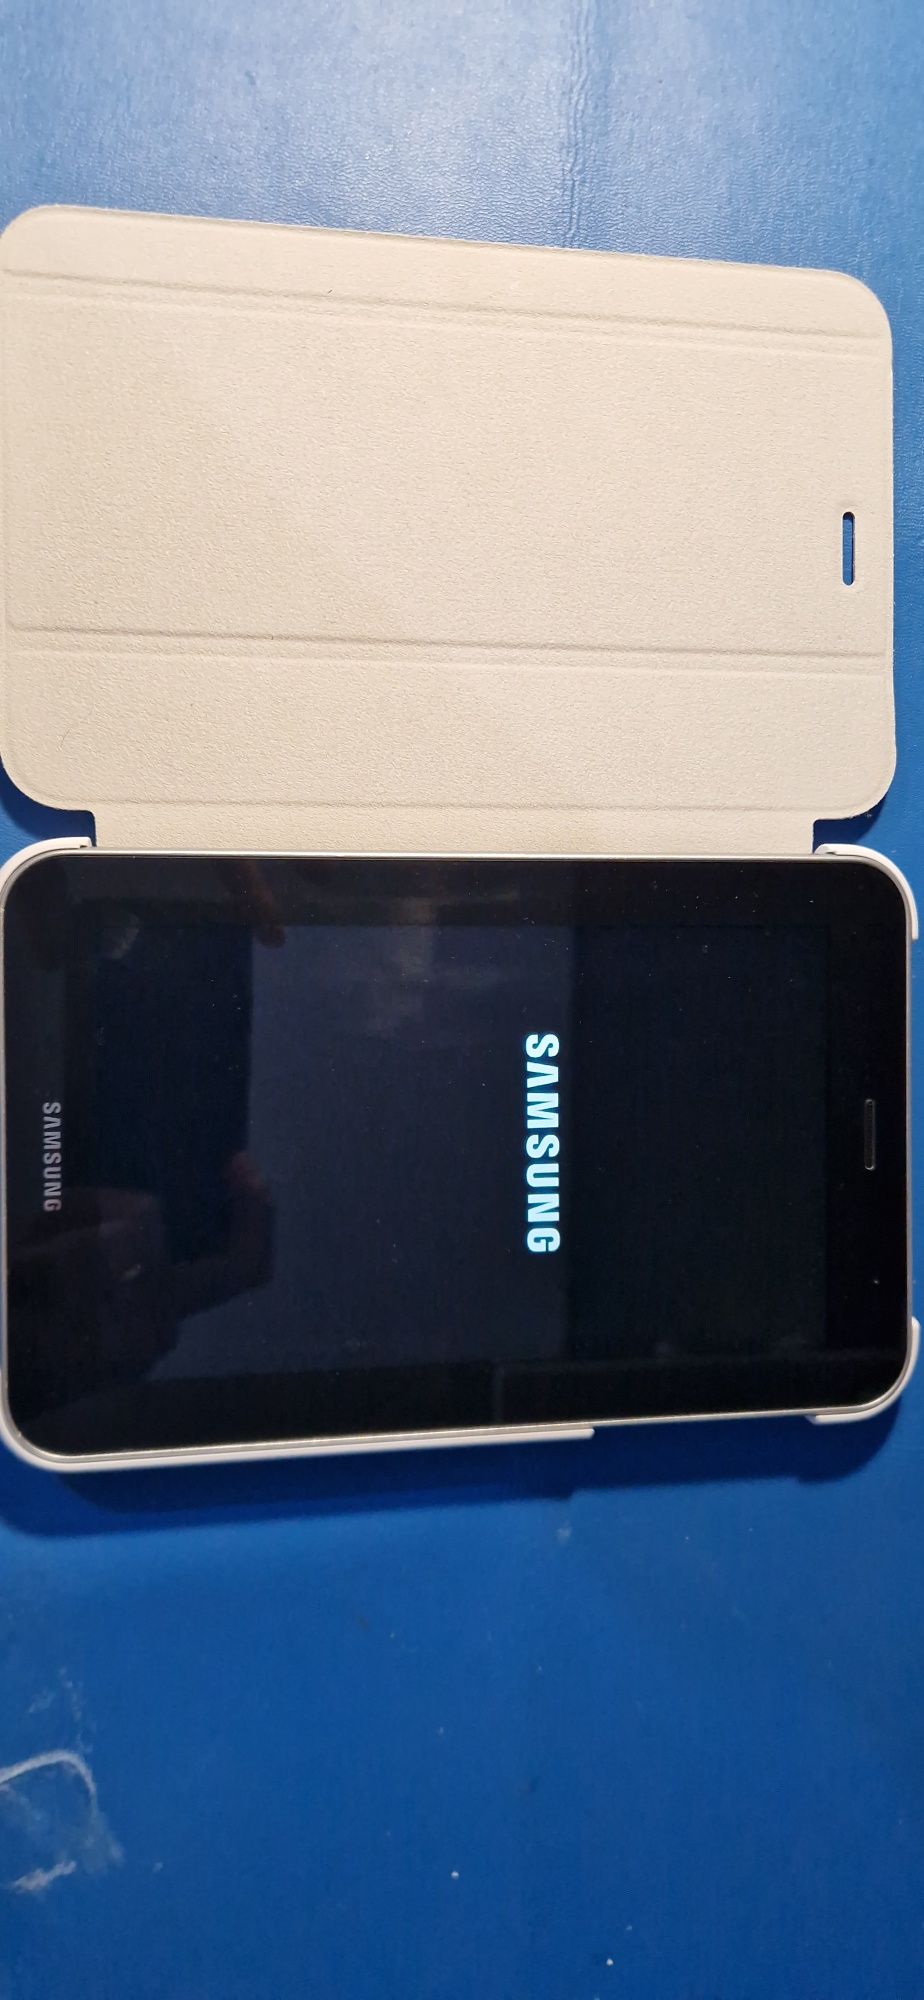 Tablet samsung galaxy tab 2 7.0